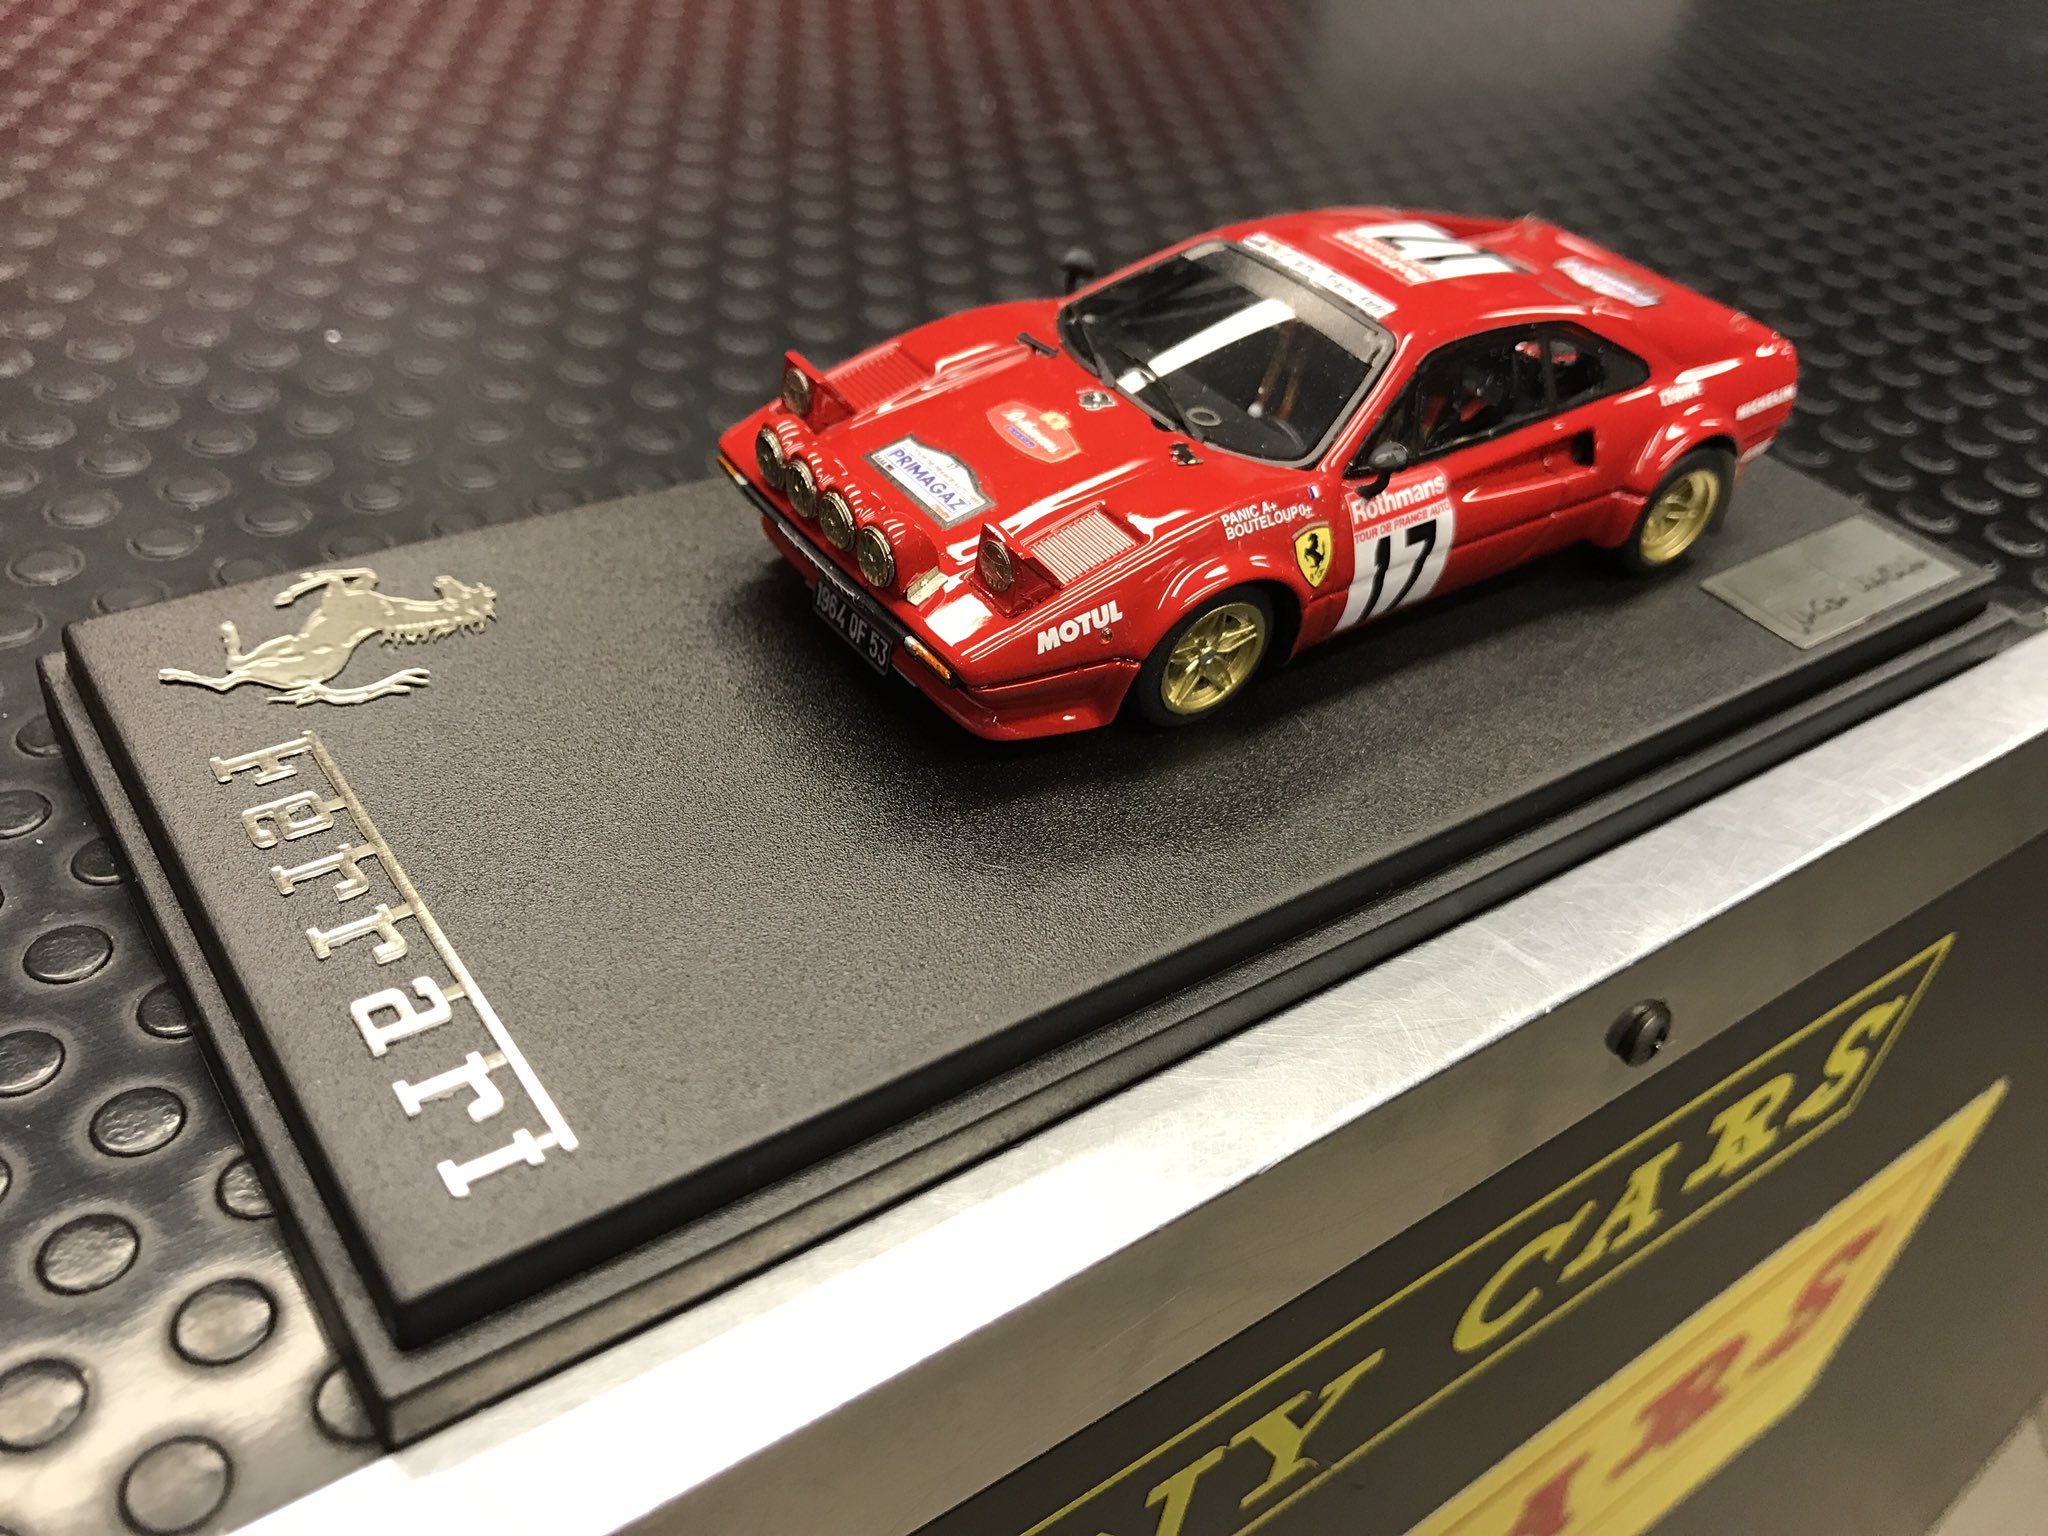 Tiny Cars Milano on Twitter: "Ferrari 308 GTB - Tour de France 1983 - Bouteloup/ Panic montata ...